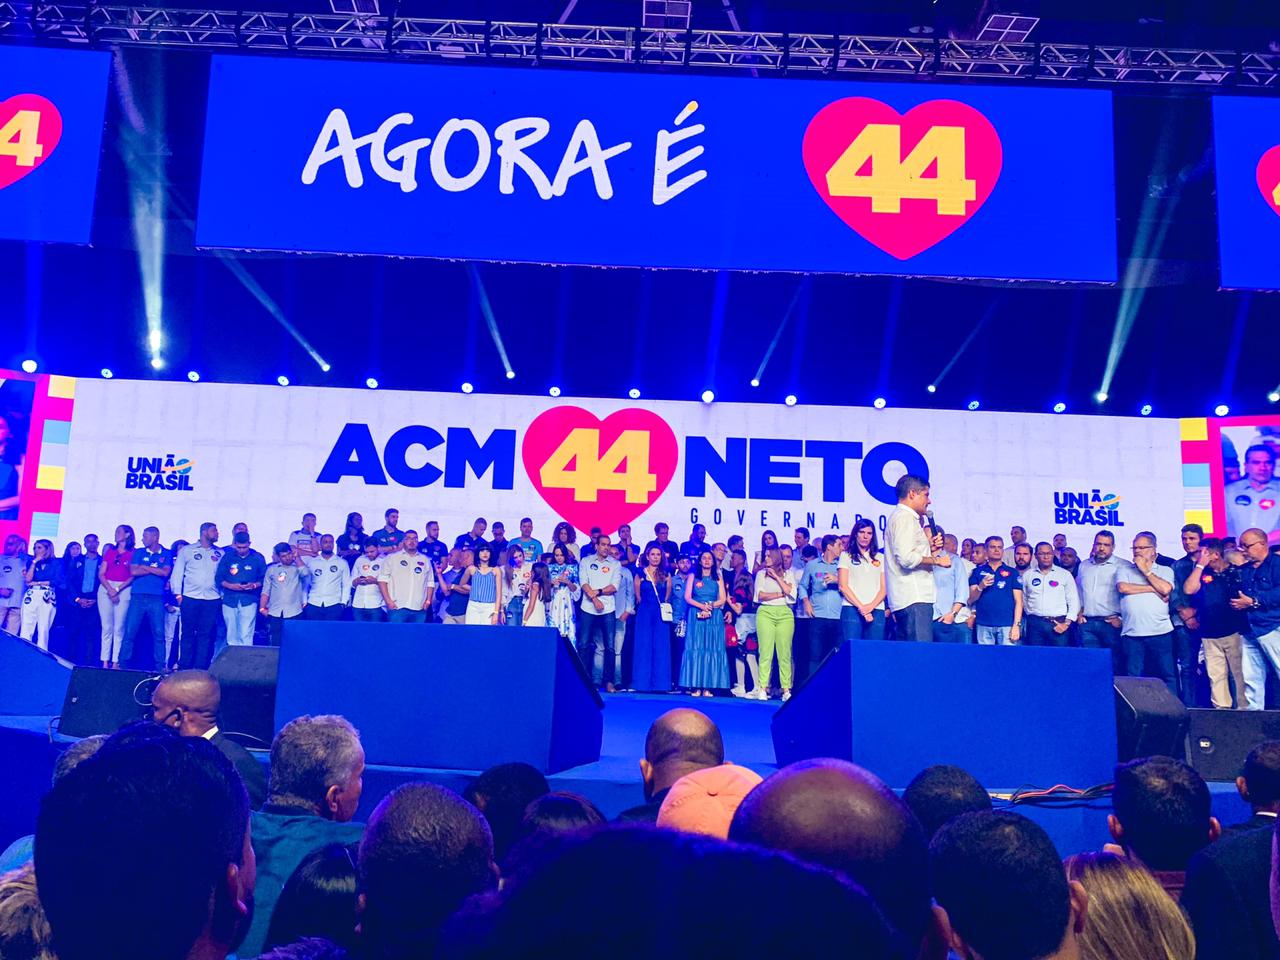 Prefeita de Eunápolis participa da convenção que lançou ACM Neto como candidato a governador da Bahia 10